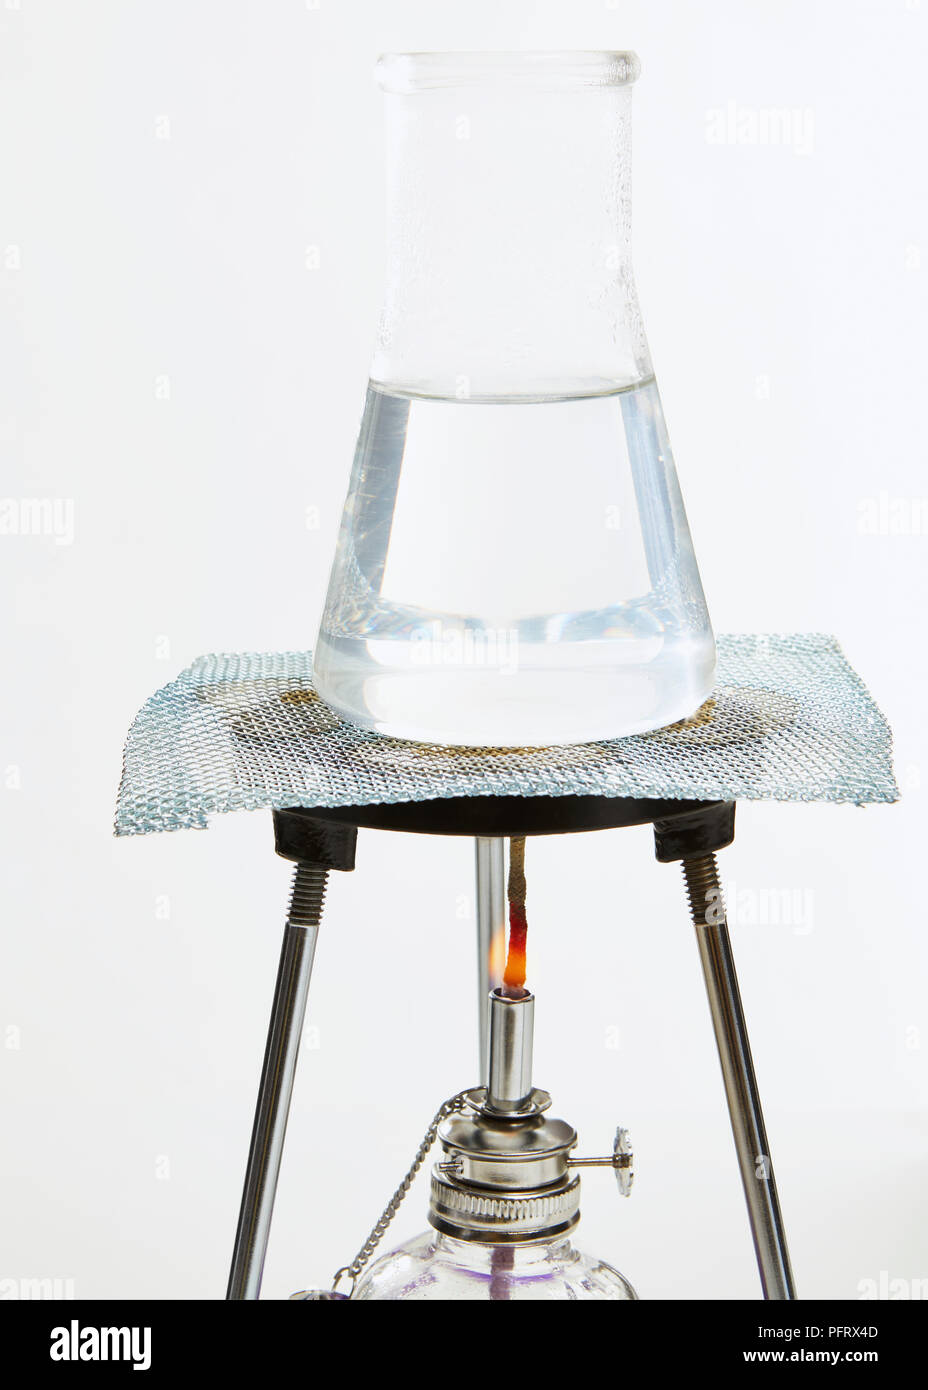 Fiole de verre sur un trépied contenant de l'eau chauffée Banque D'Images